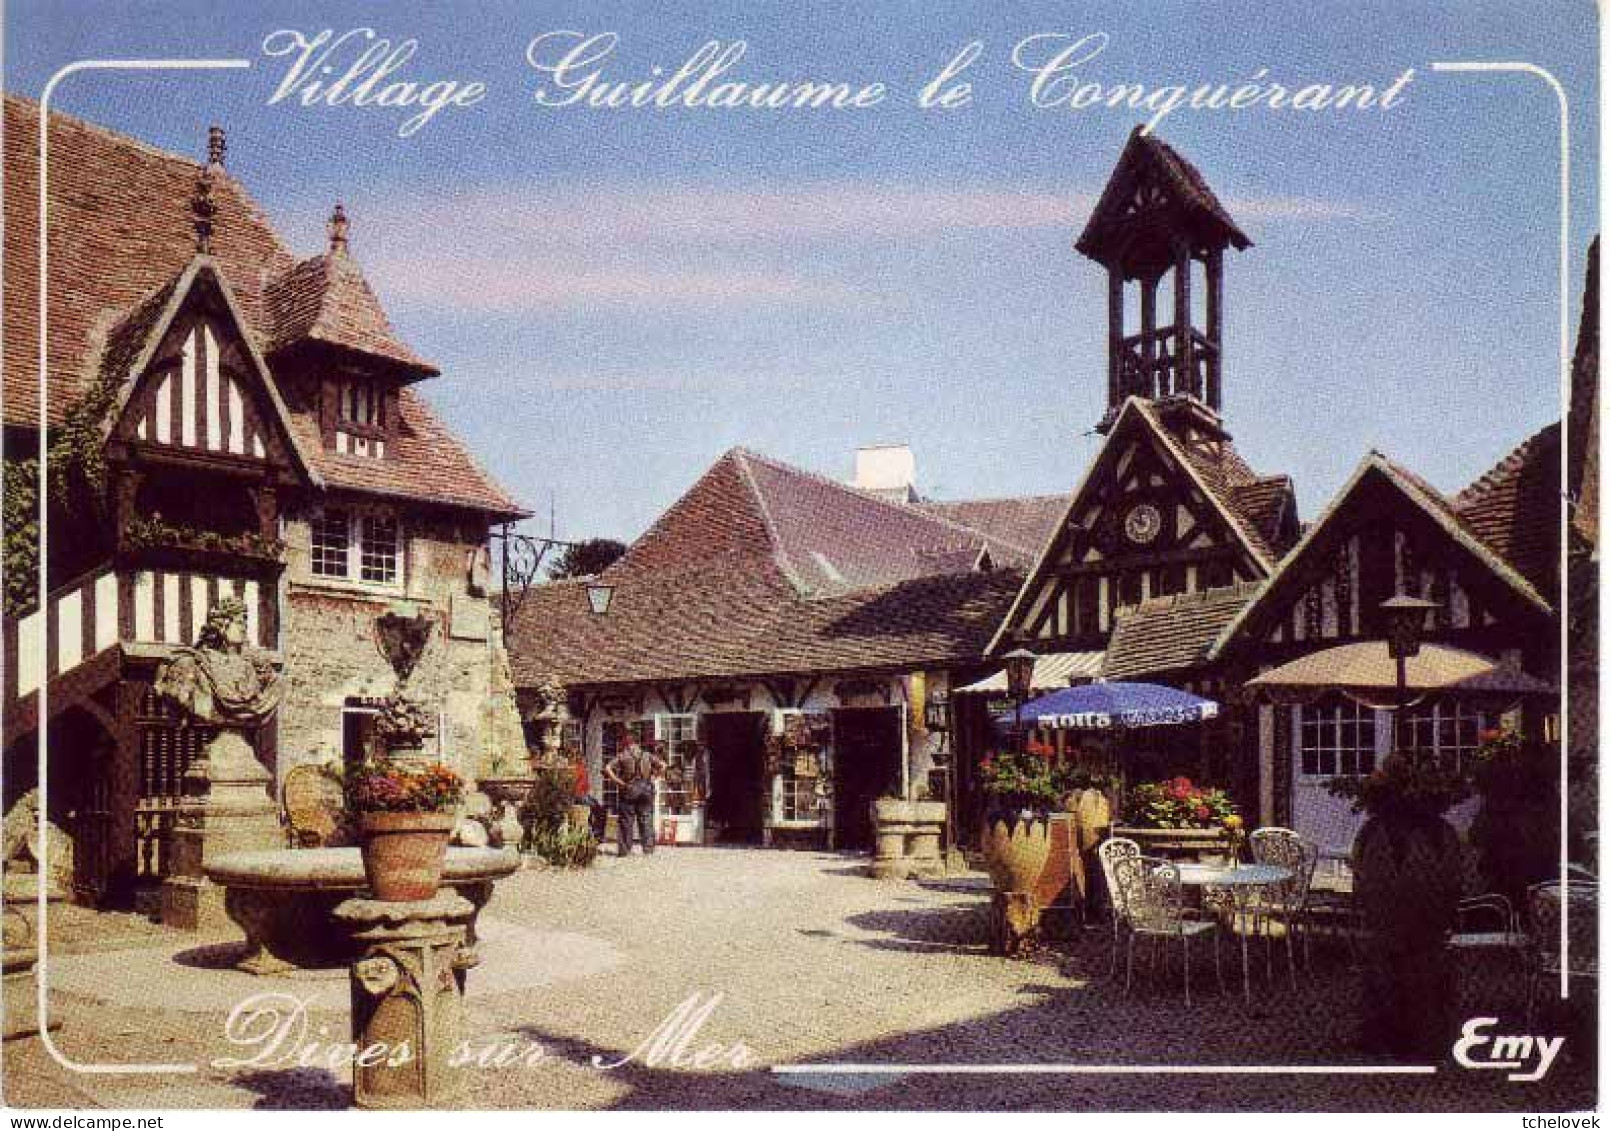 (14). Dives Sur Mer. 3759 Village De Guilluame Le Conquerant & 571 Eglise Notre Dame - Dives